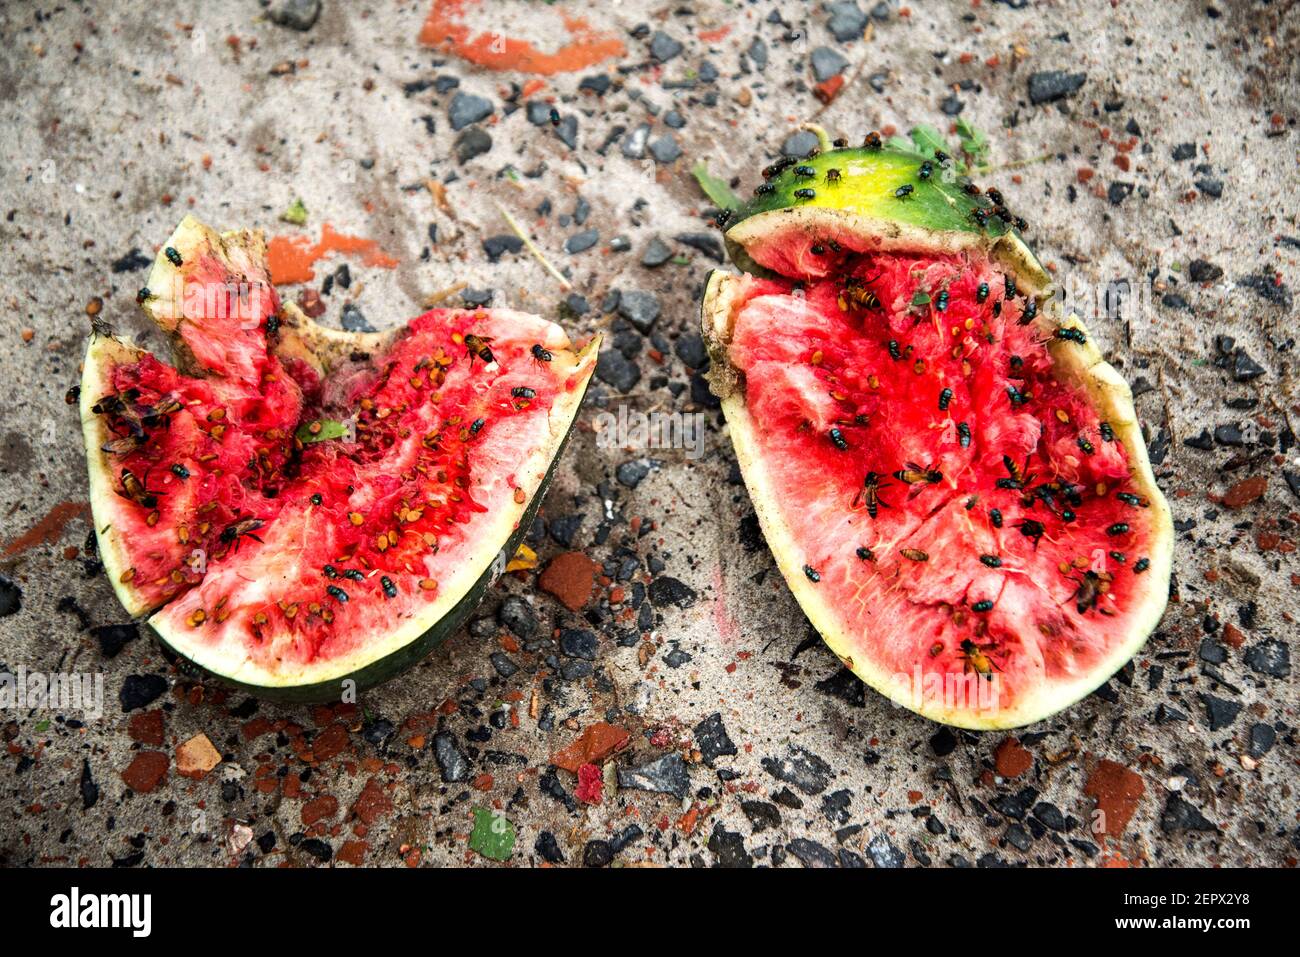 Tutti i lavoratori coinvolgono qui con l'acqua melone e l'alligatore peart coltivazione business in Bangladesh. Foto Stock